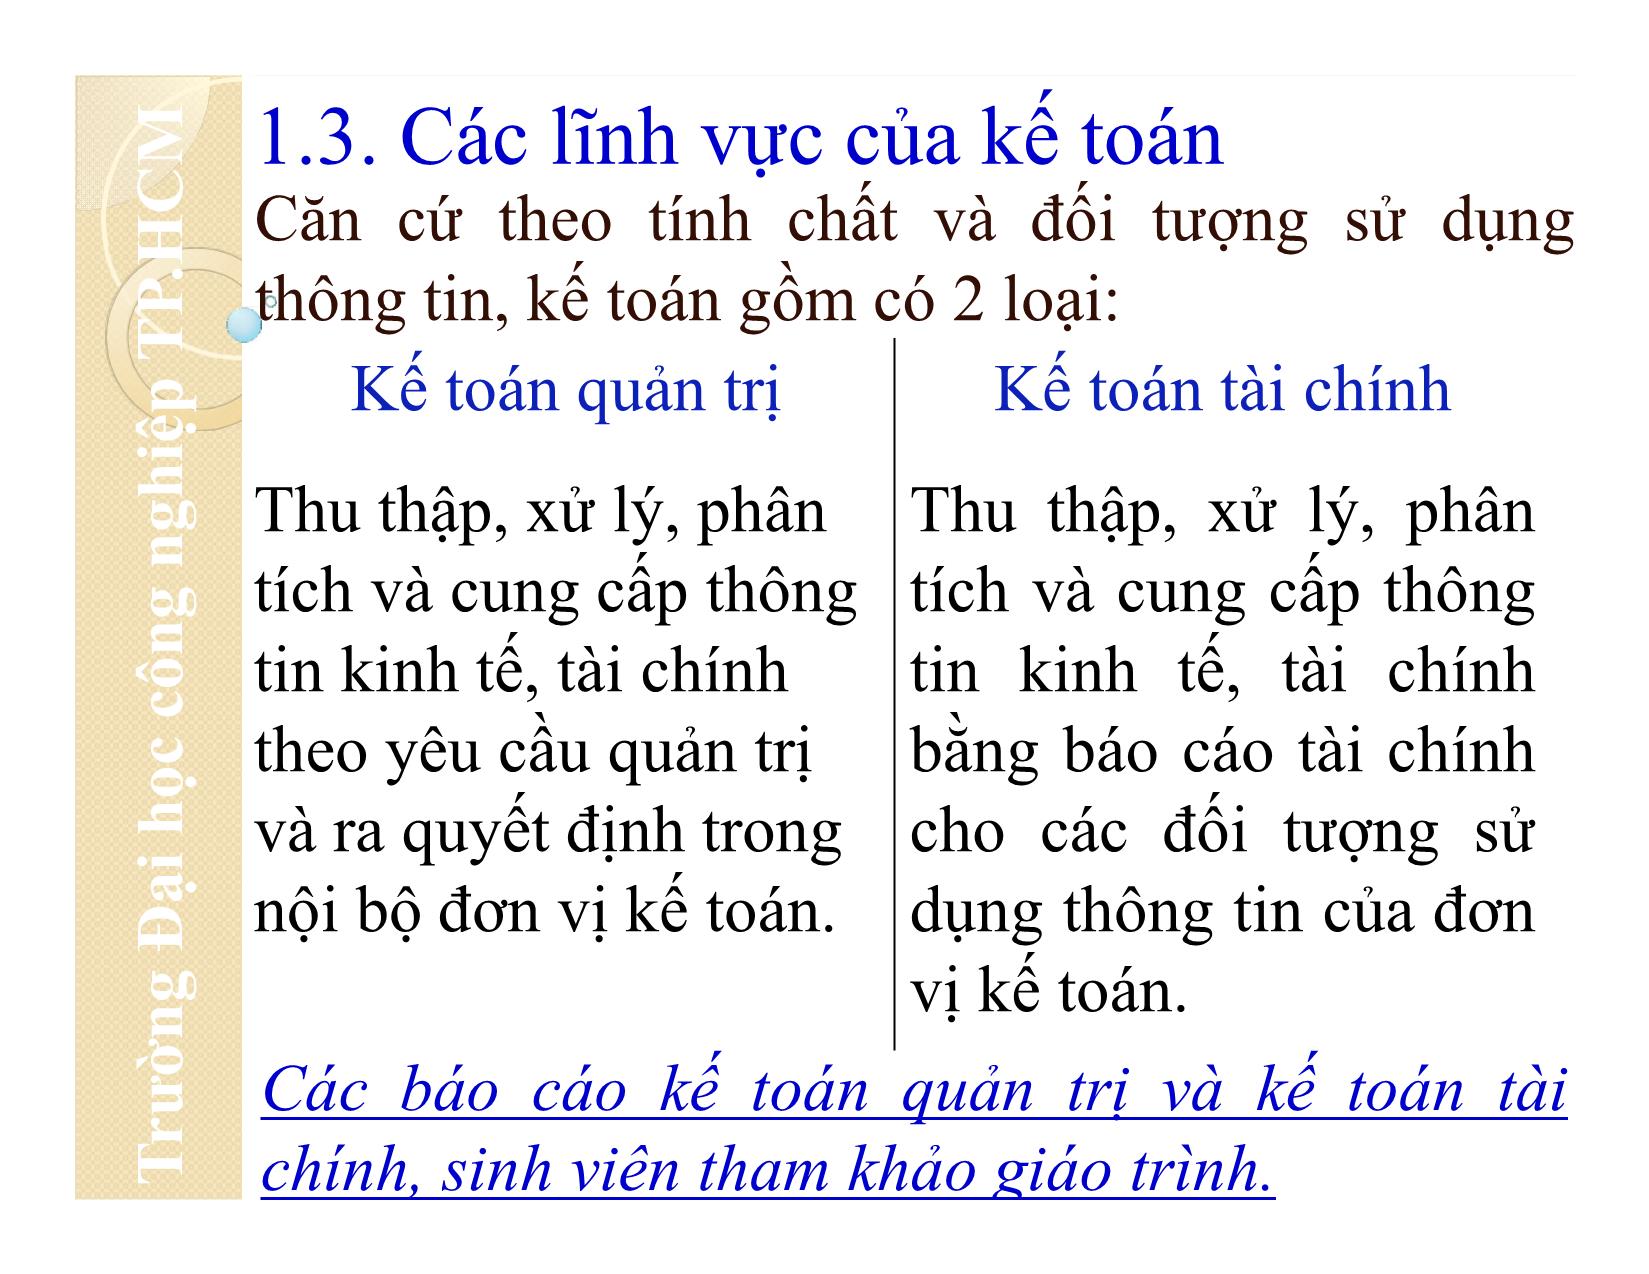 Bài giảng Nguyên lý kế toán - Chương 1: Tổng quan về kế toán - Đại học Công nghiệp thành phố Hồ Chí Minh trang 9